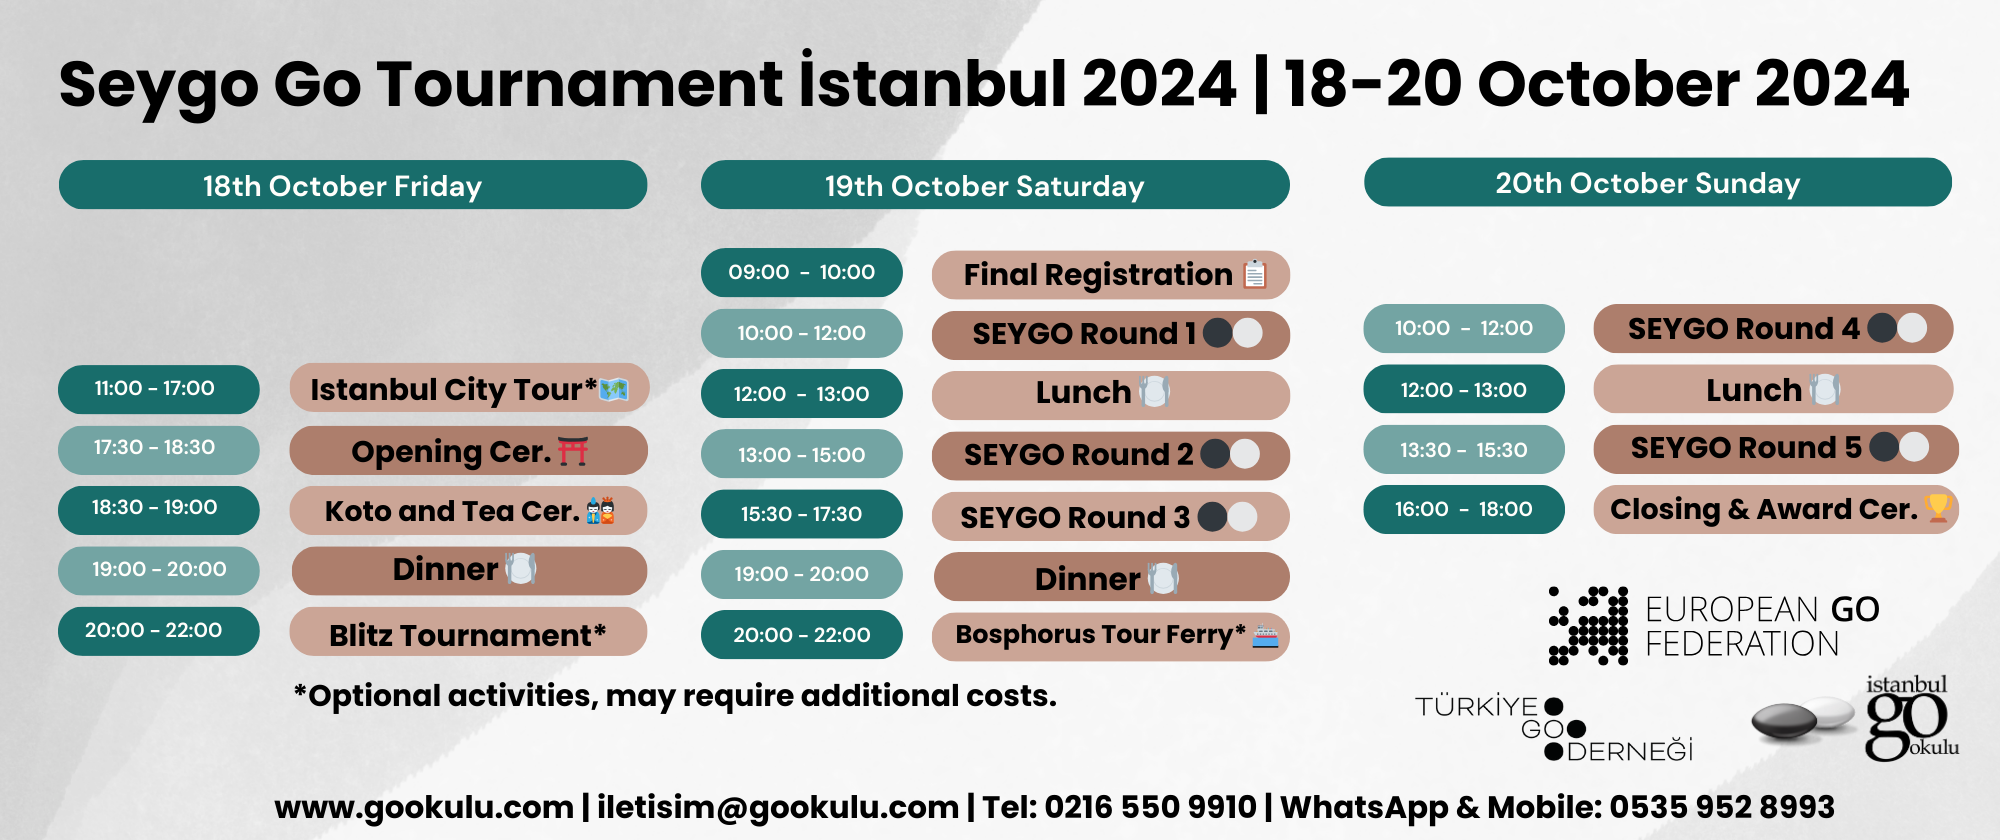 schedule seygo 2024 istanbul